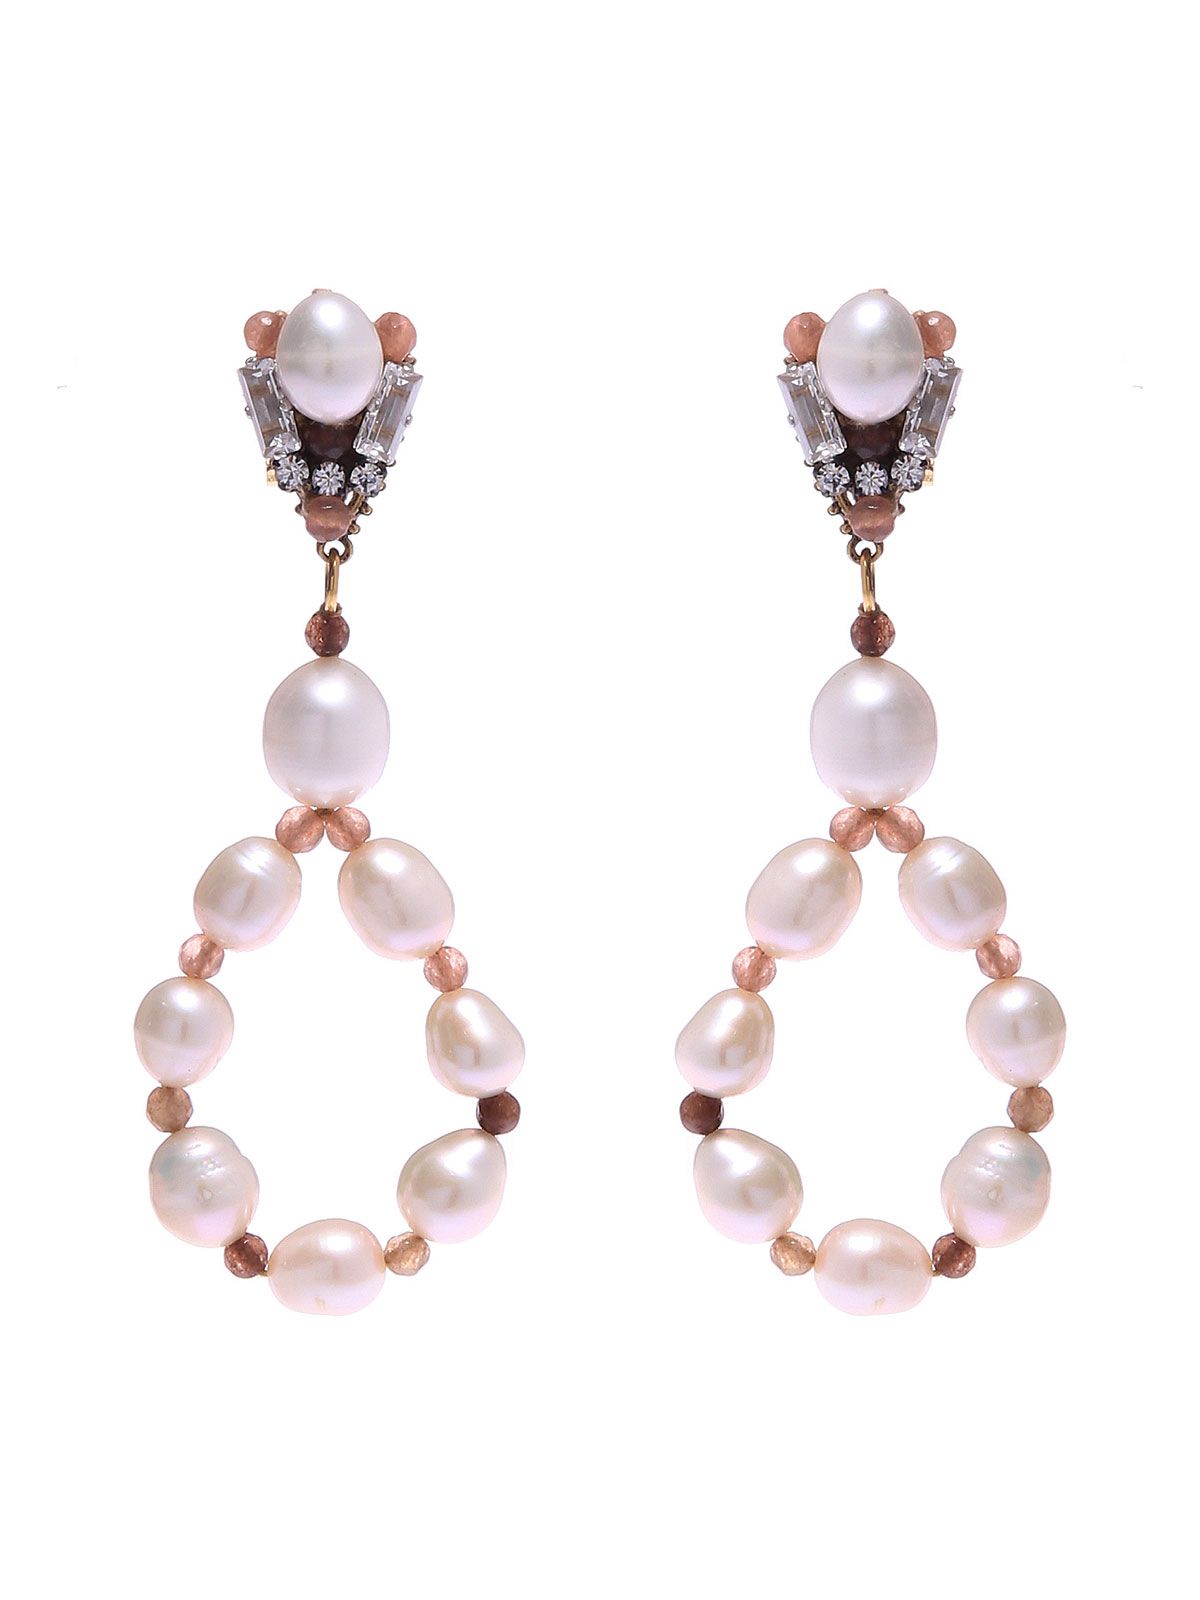 Jade earrings with freashwater pearls